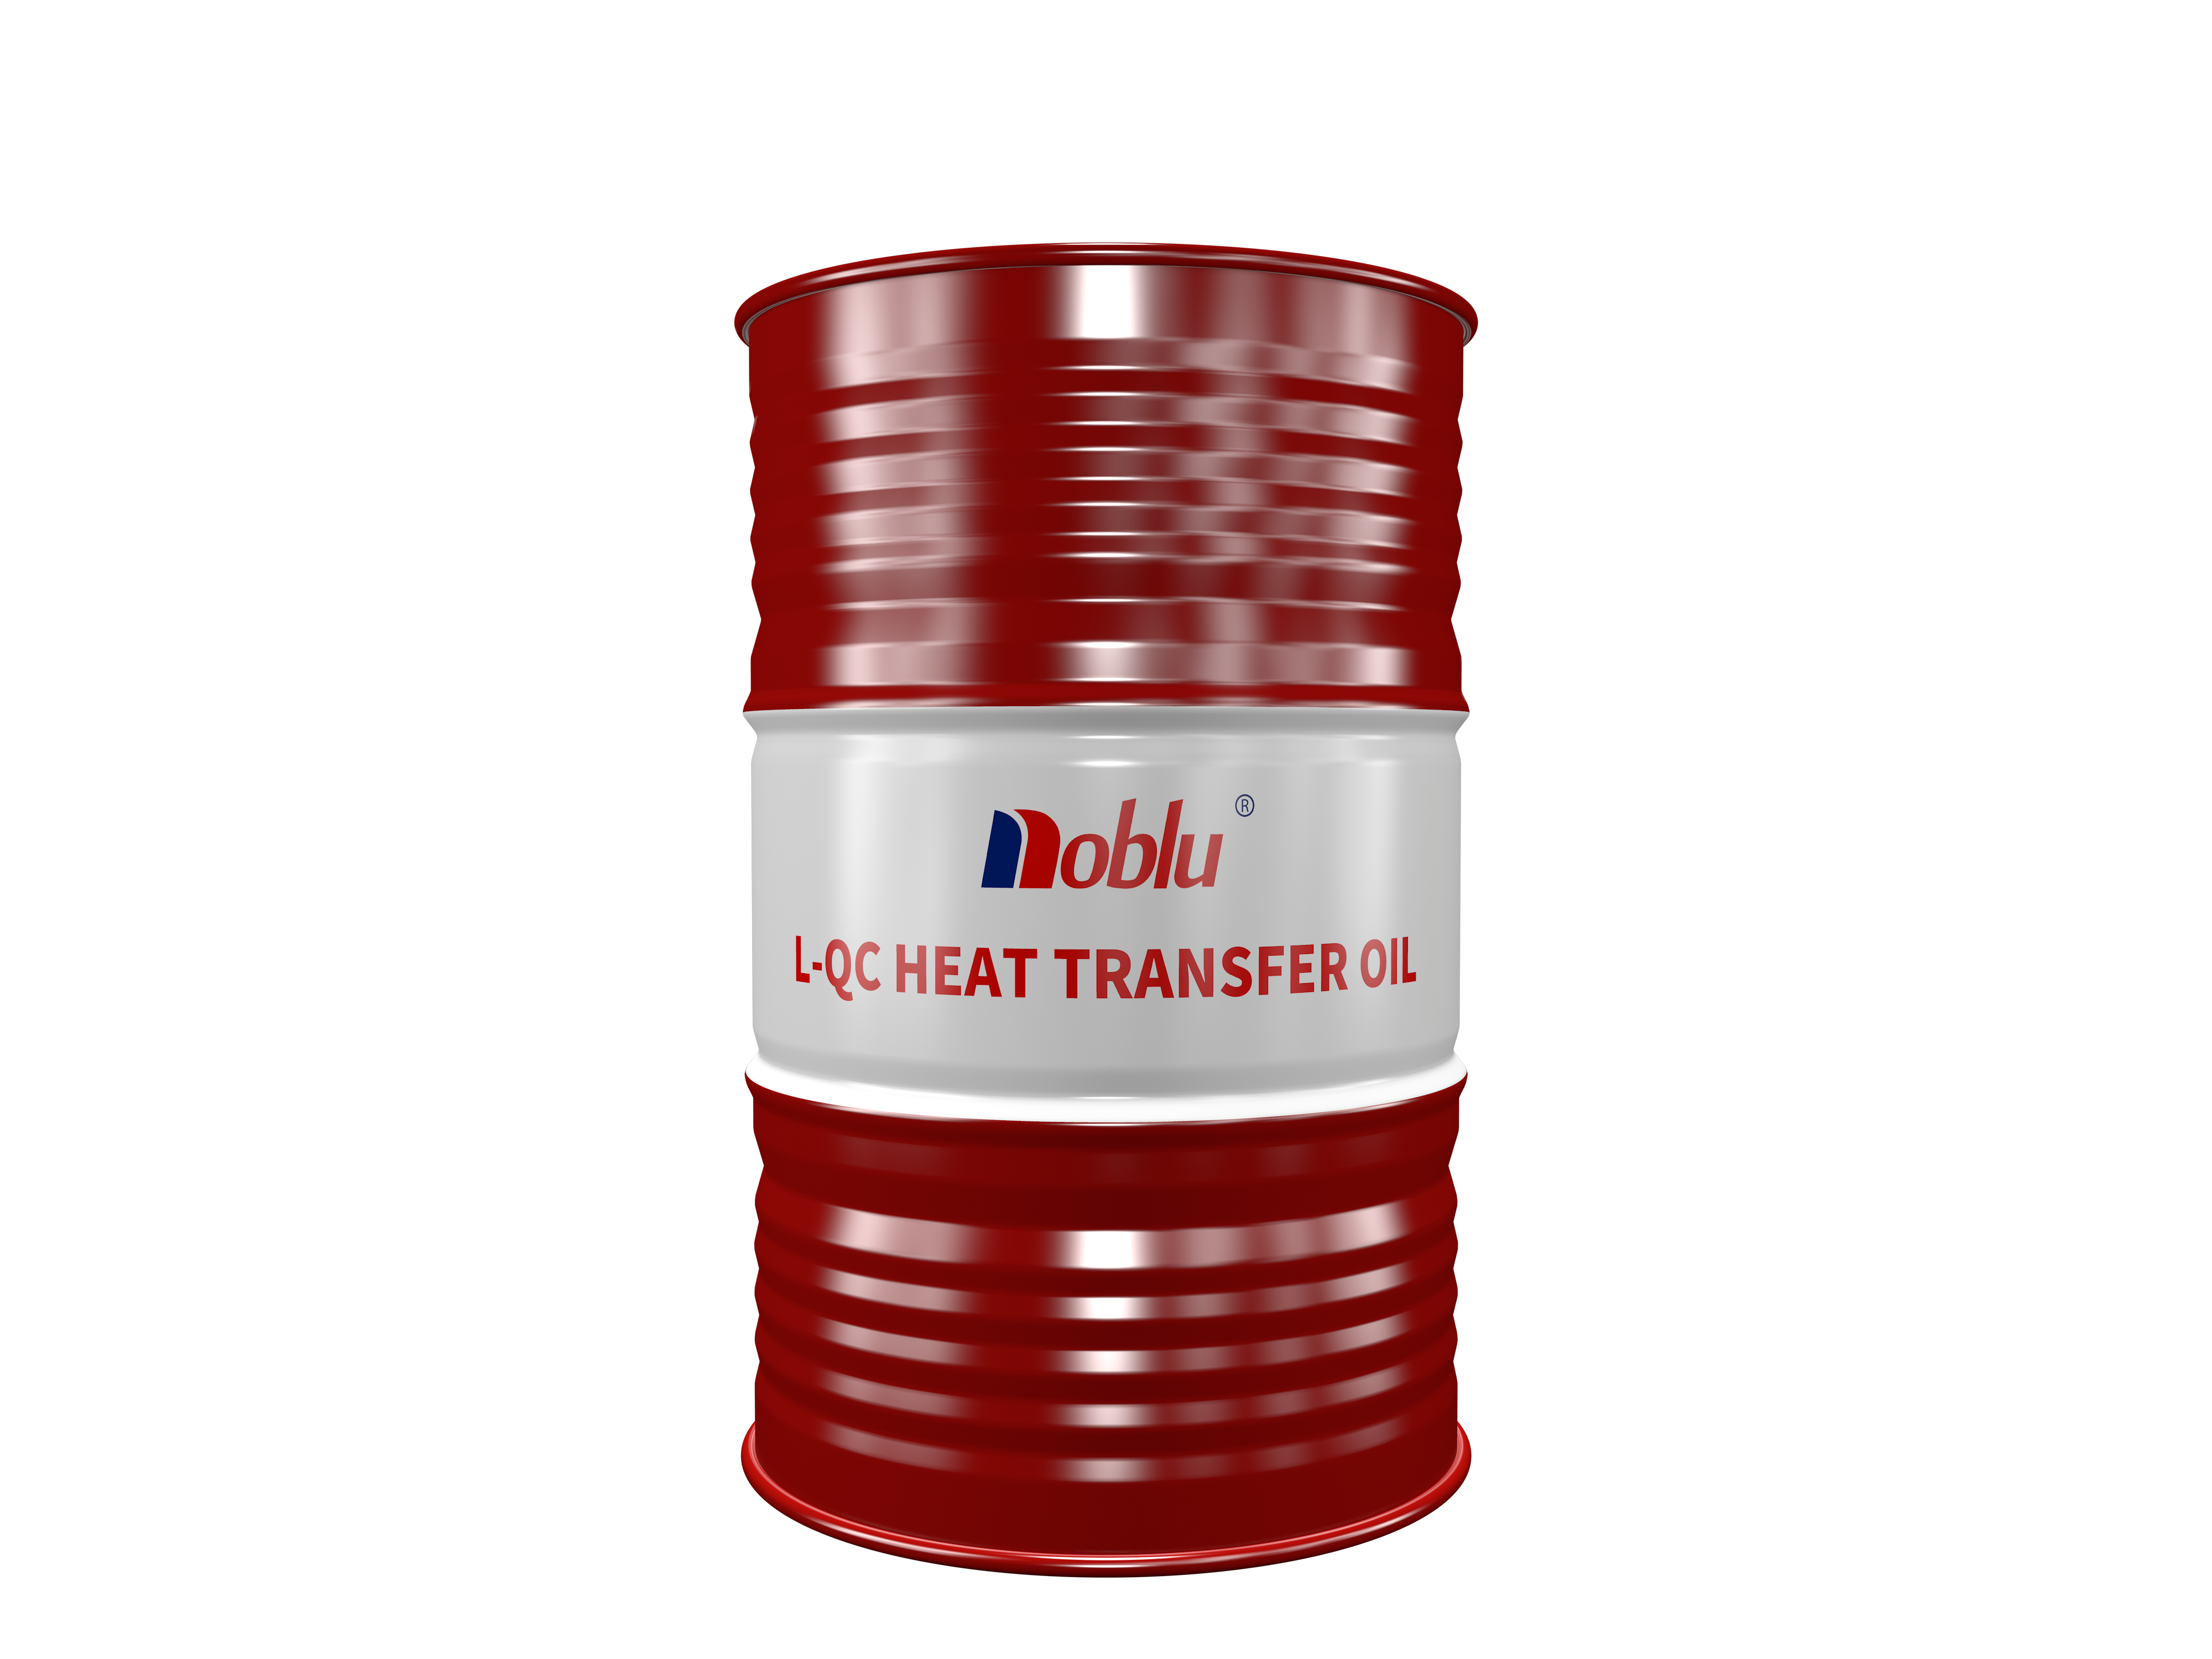 L-QC heat transfer oil